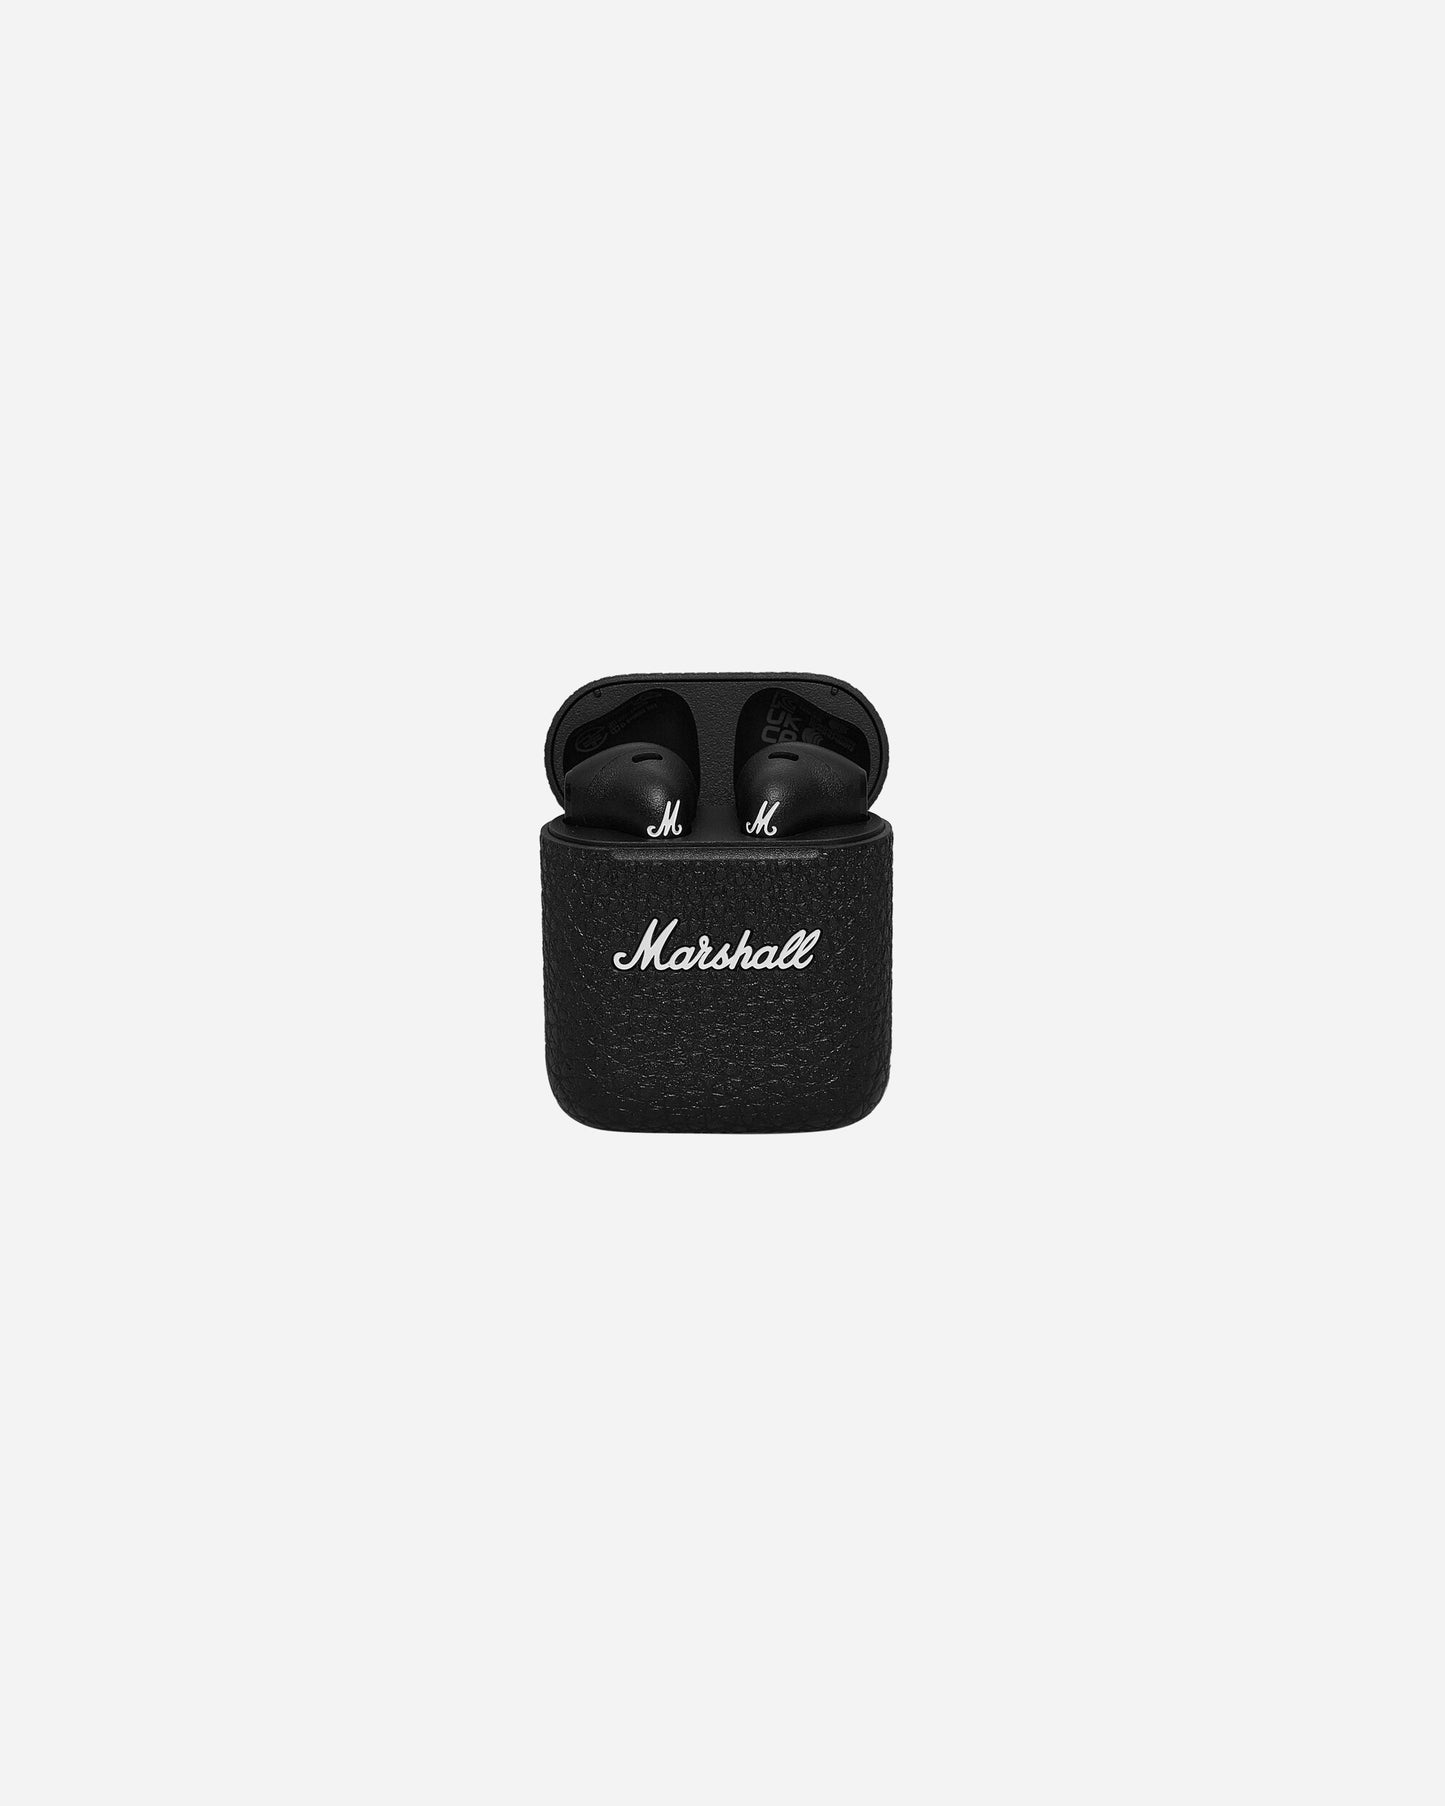 Marshall Marshall Minor Iii Black Tech and Audio Headphones 1005983 001